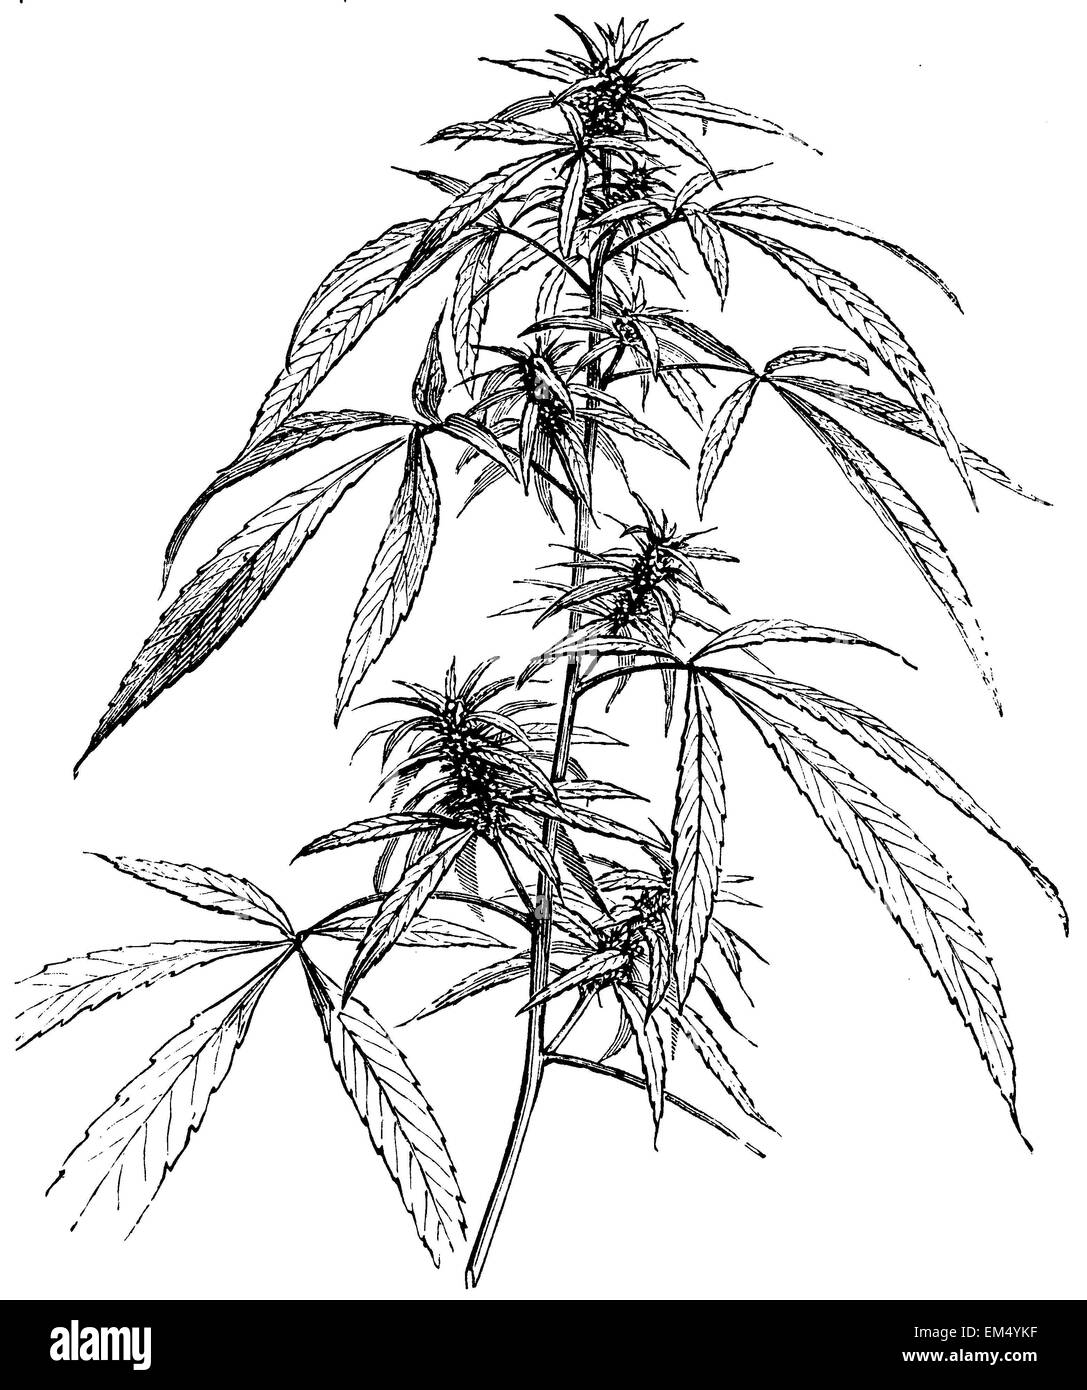 La plante de cannabis mâle Banque D'Images